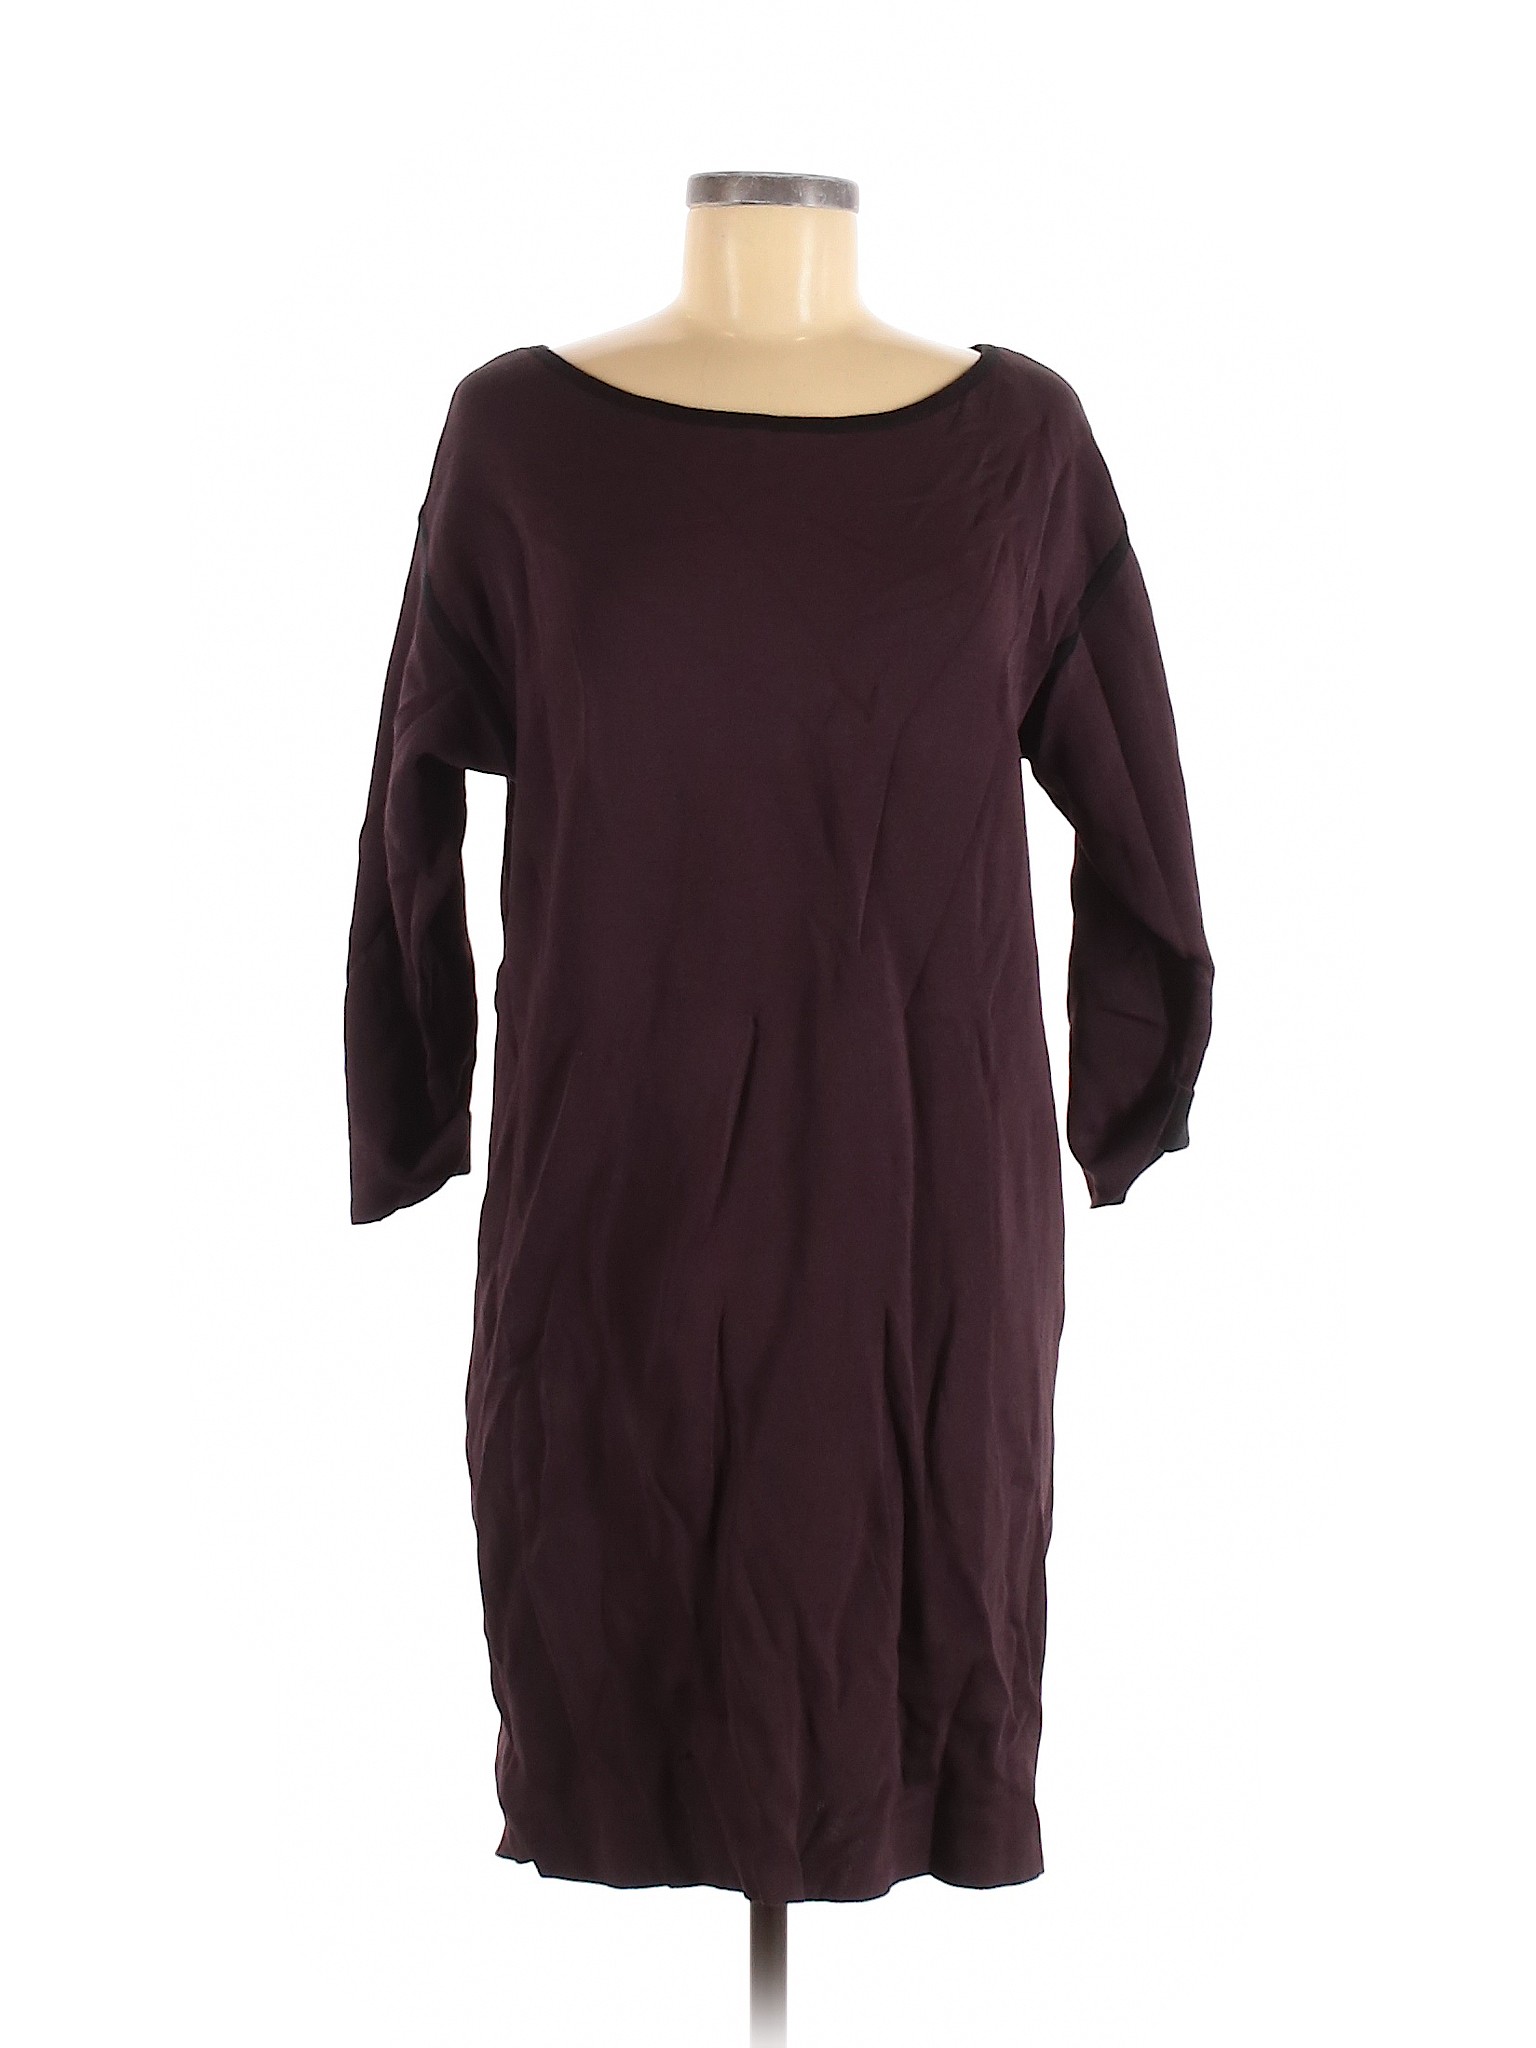 Ann Taylor Women Purple Casual Dress M | eBay